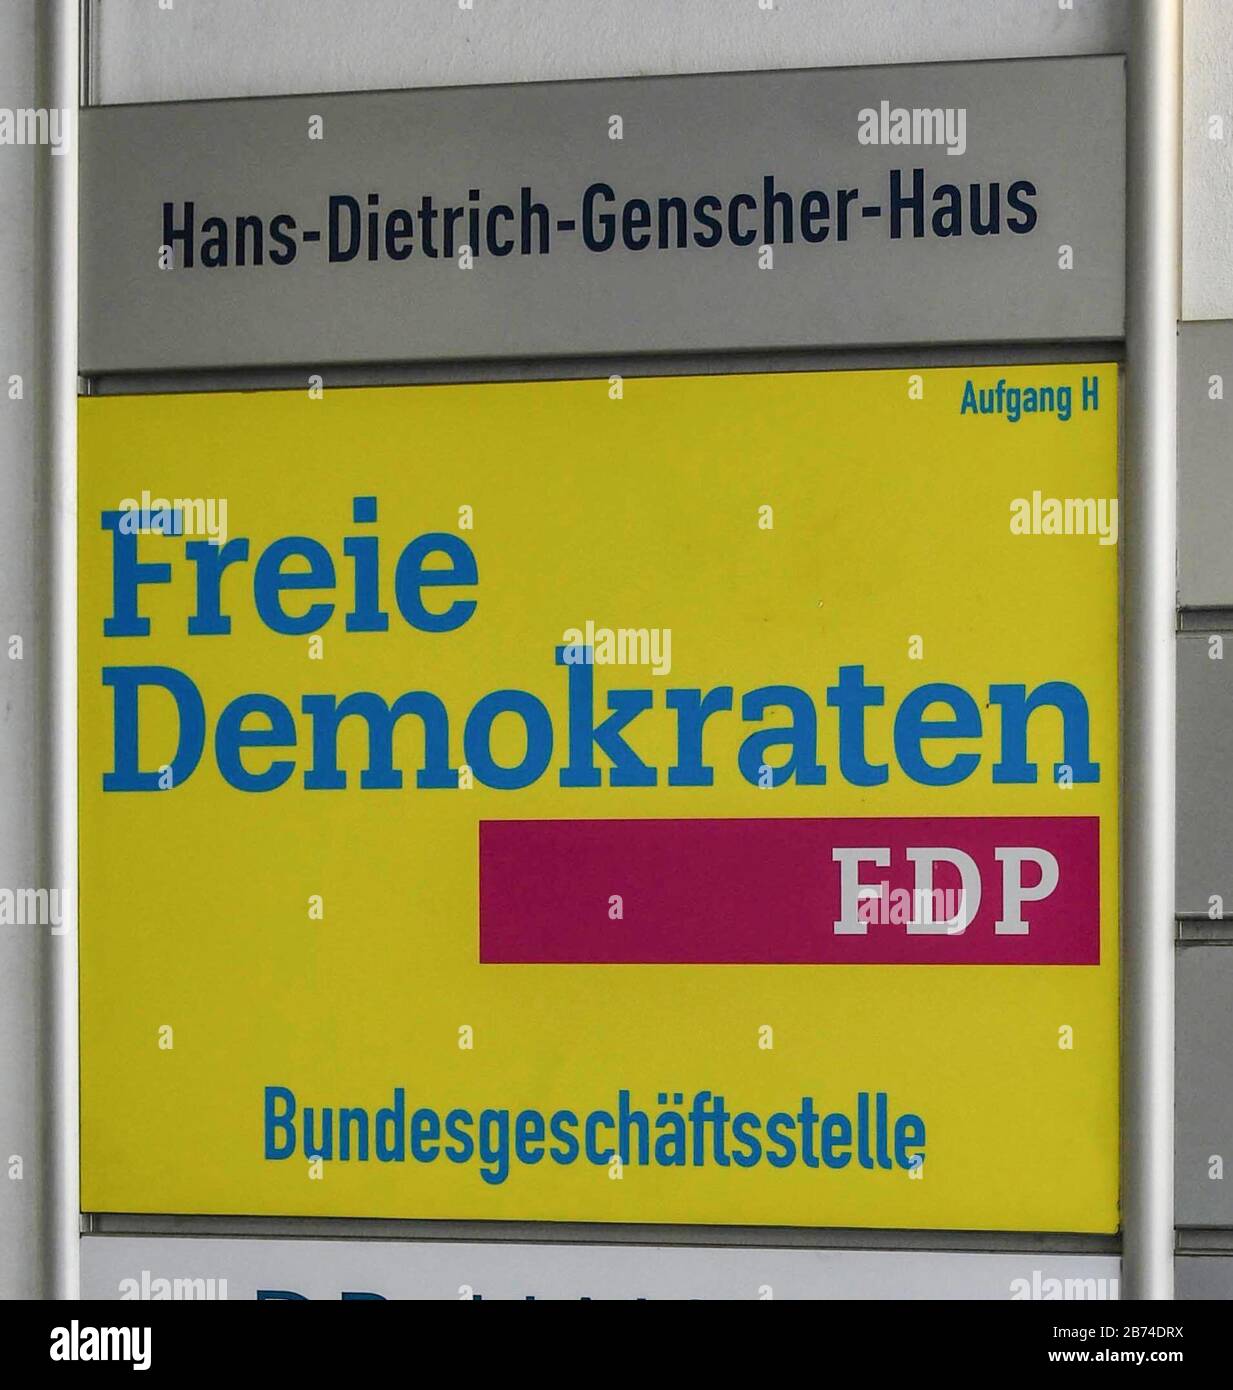 Hans-Dietrich-Genscher-Haus, FDP, BerlinFeb. 28, 2020 | usage worldwide Stock Photo